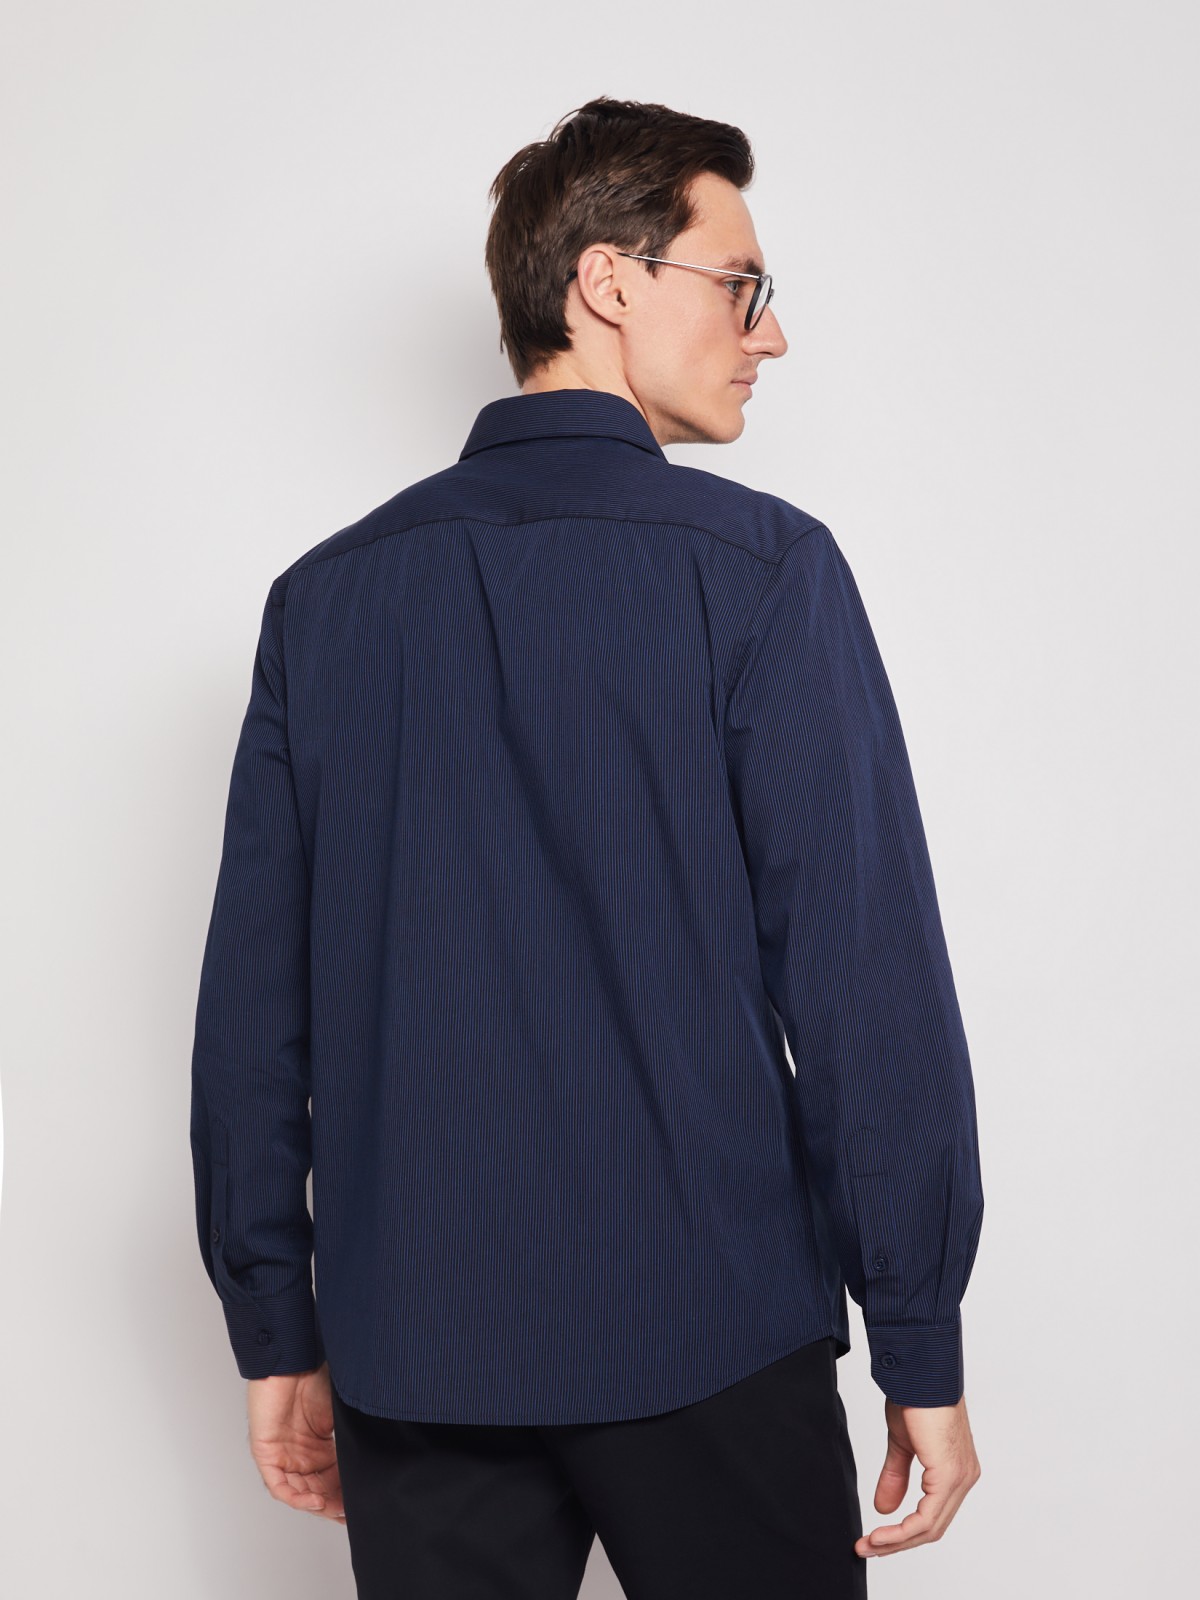 Рубашка в полоску с длинным рукавом zolla 012112159042, цвет темно-синий, размер M - фото 6